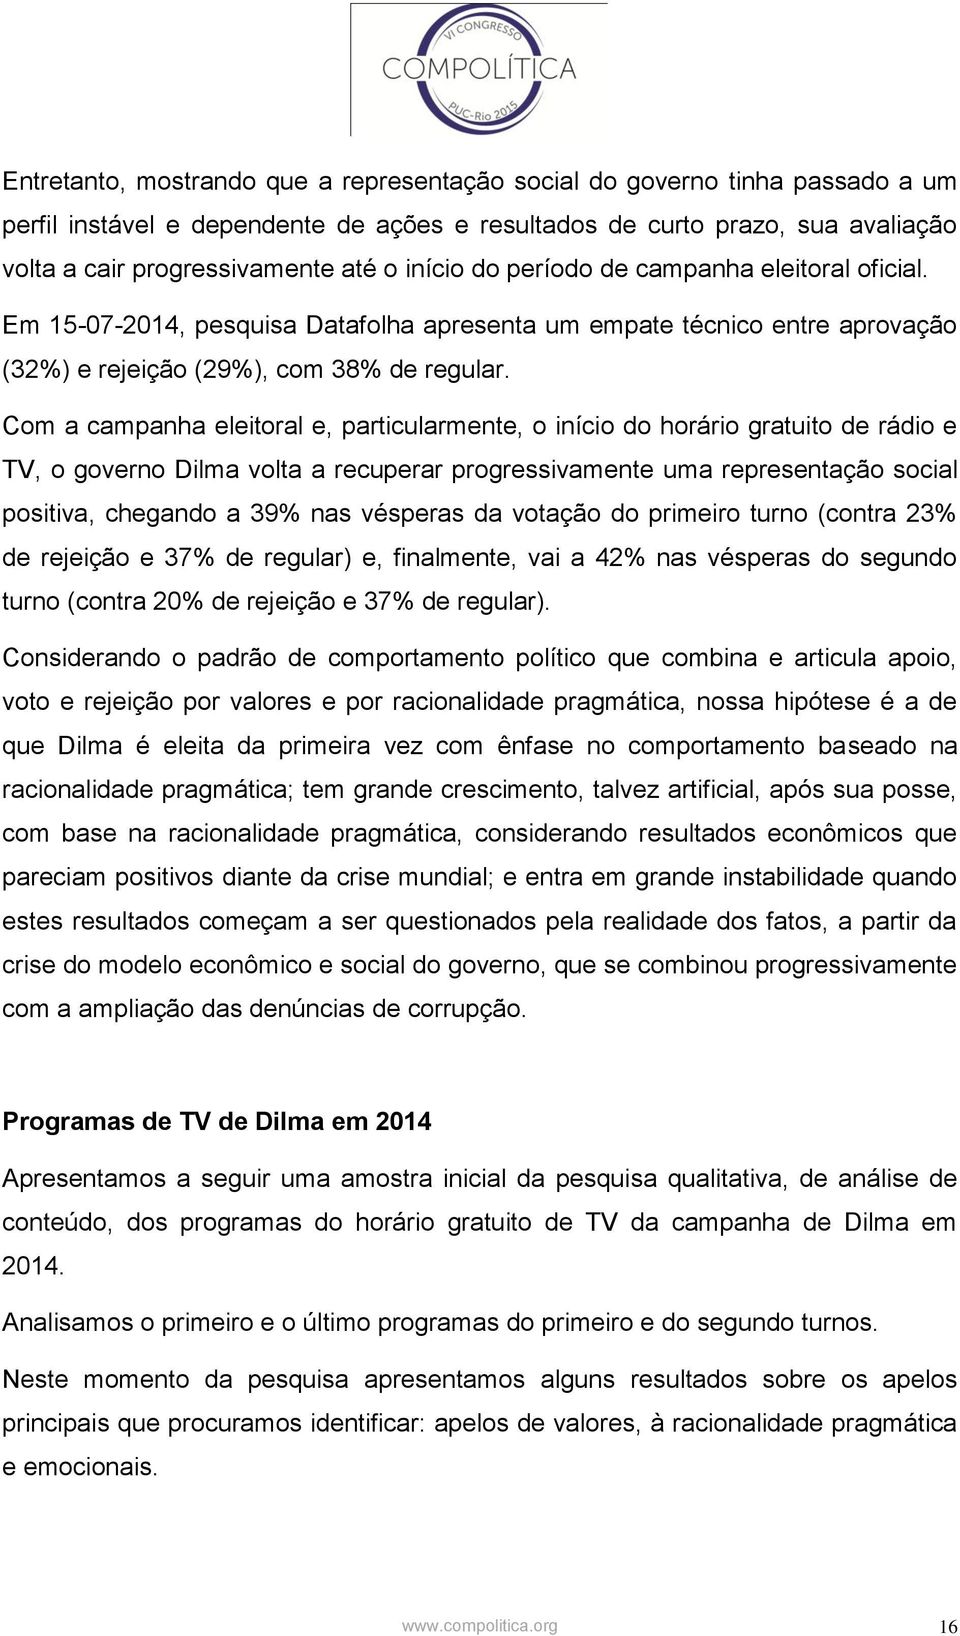 Com a campanha eleitoral e, particularmente, o início do horário gratuito de rádio e TV, o governo Dilma volta a recuperar progressivamente uma representação social positiva, chegando a 39% nas